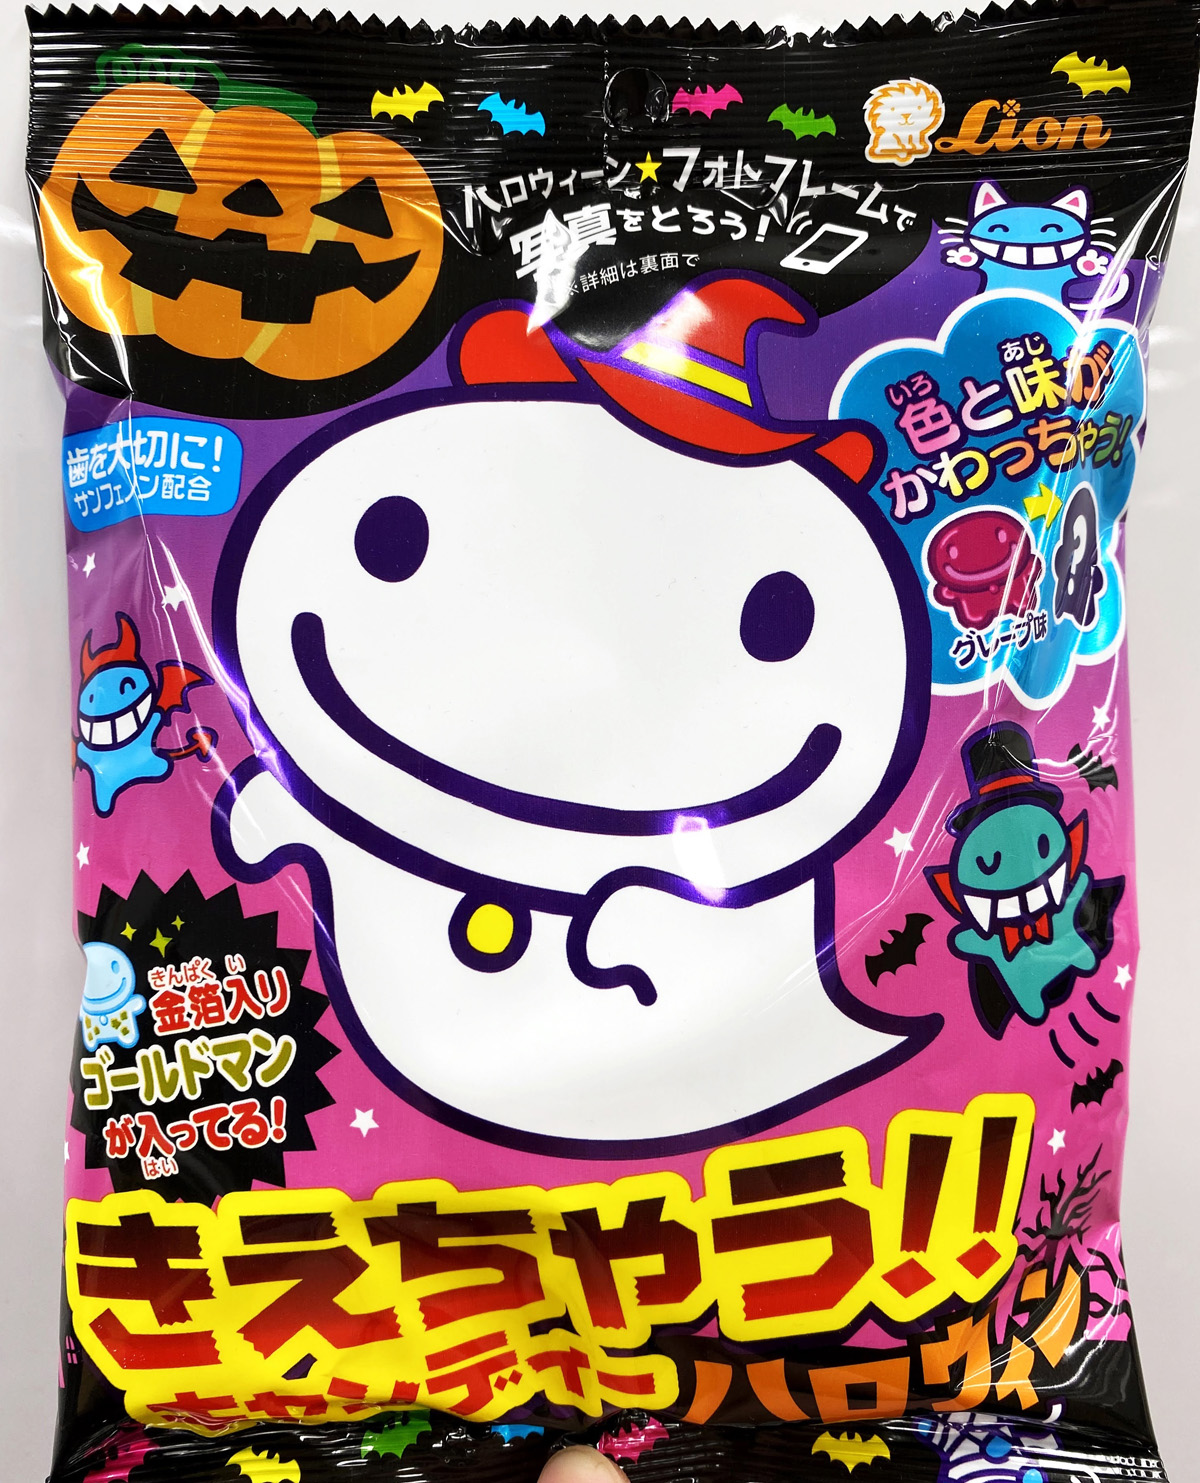 ライオン菓子株式会社から発売されている「きえちゃうキャンディー」の商品パッケージ